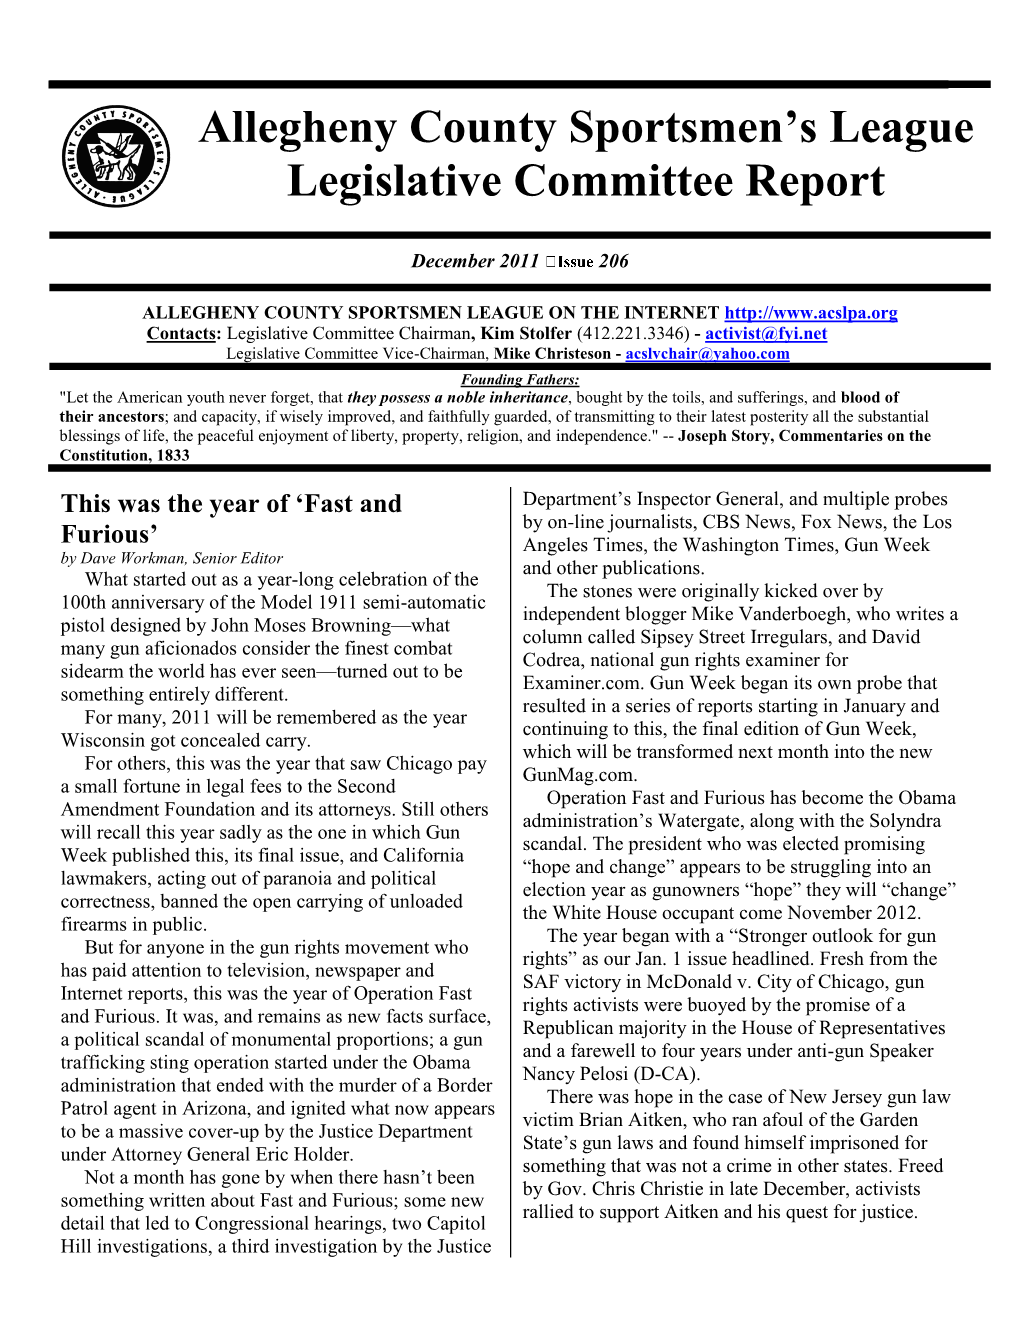 Allegheny County Sportsmen's League Legislative Committee Report